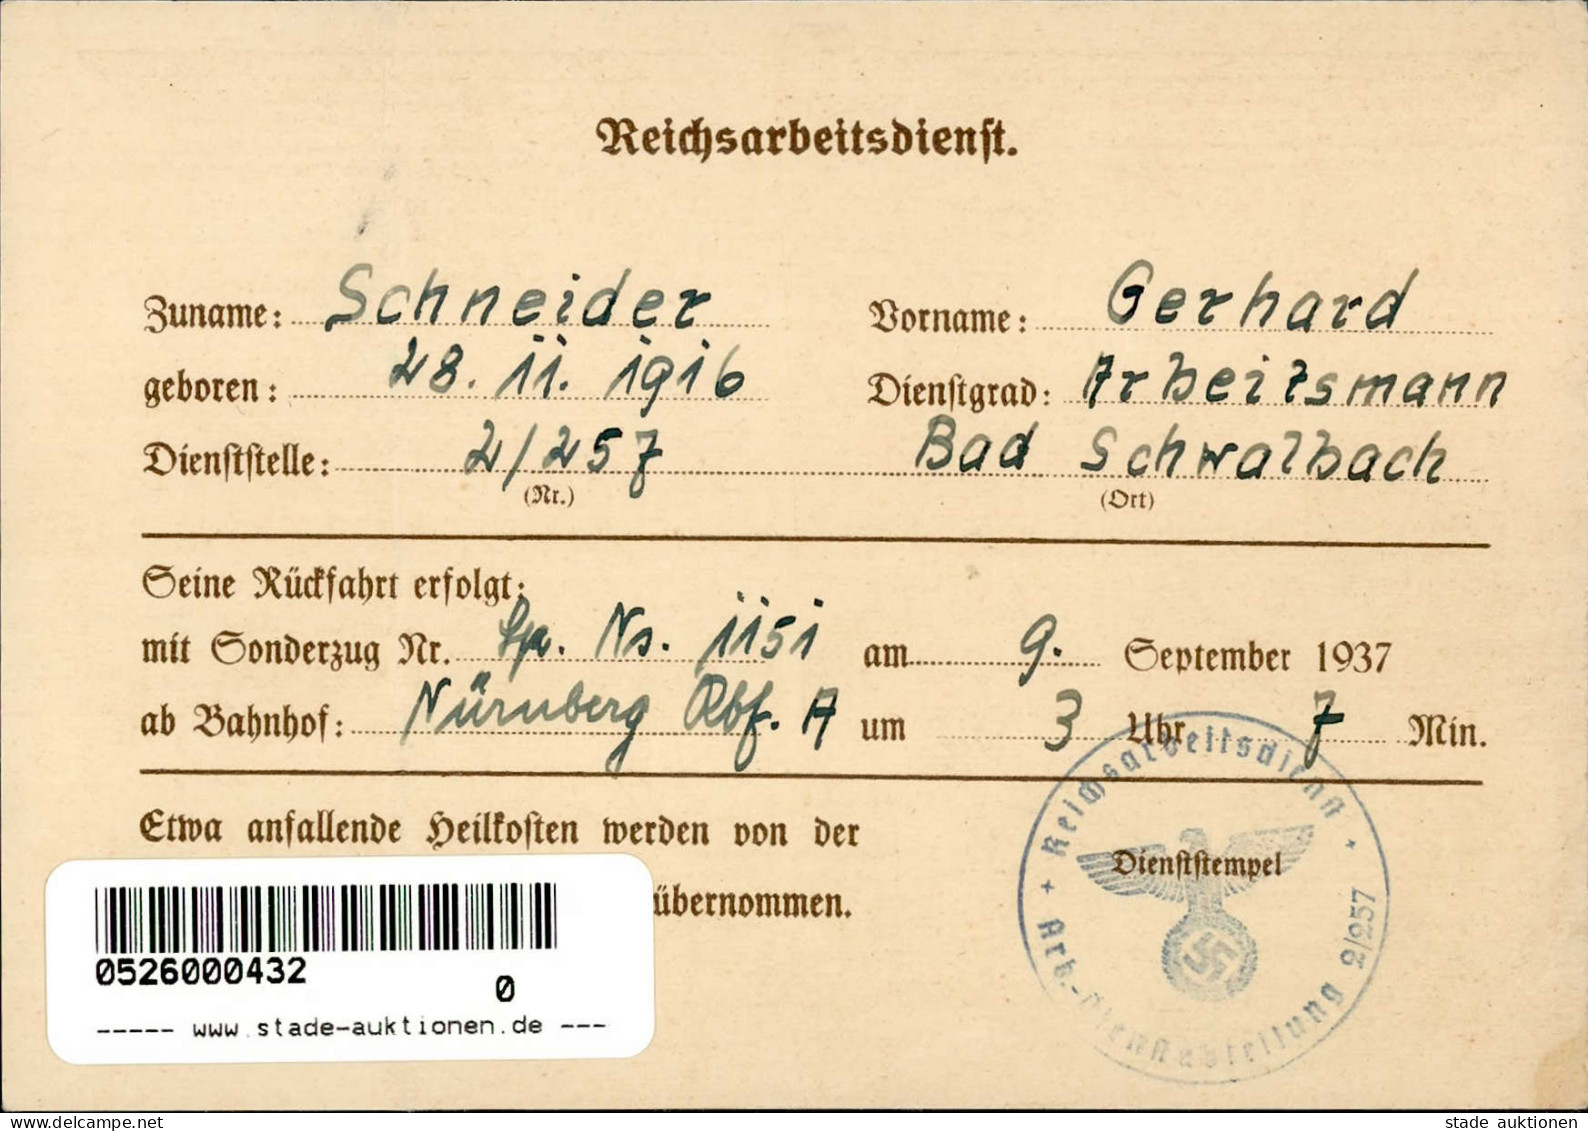 Reichsparteitag WK II Nürnberg (8500) 1937 Ausweis Für Aktive Teilnehmer (Querbug) - War 1939-45